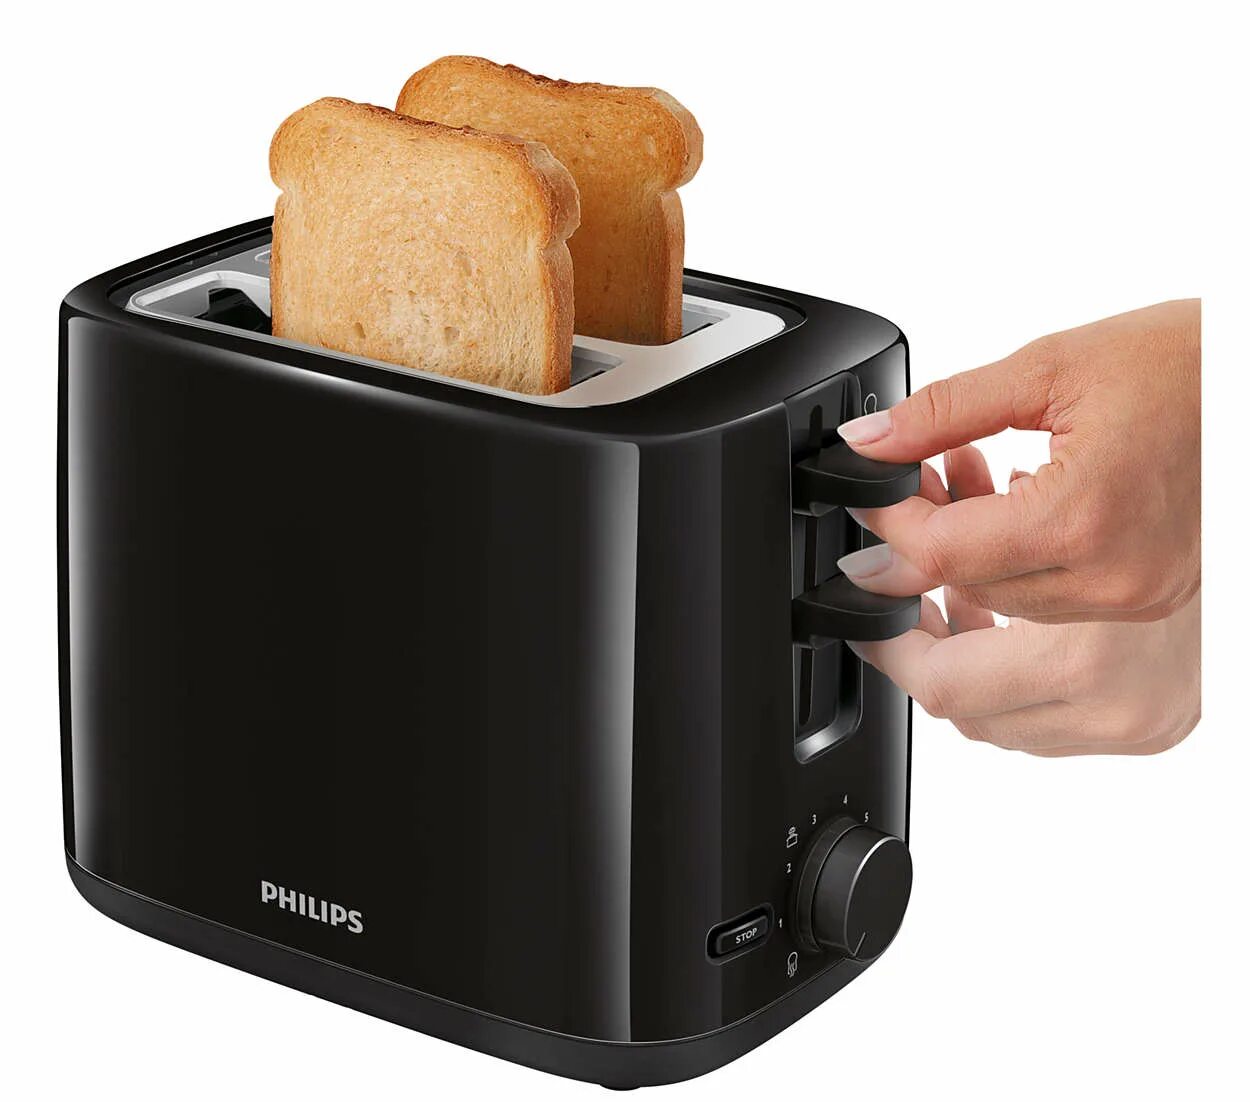 Тостер цена качество рейтинг. Hd2595/00 тостер Philips. Тостер Филипс черный.